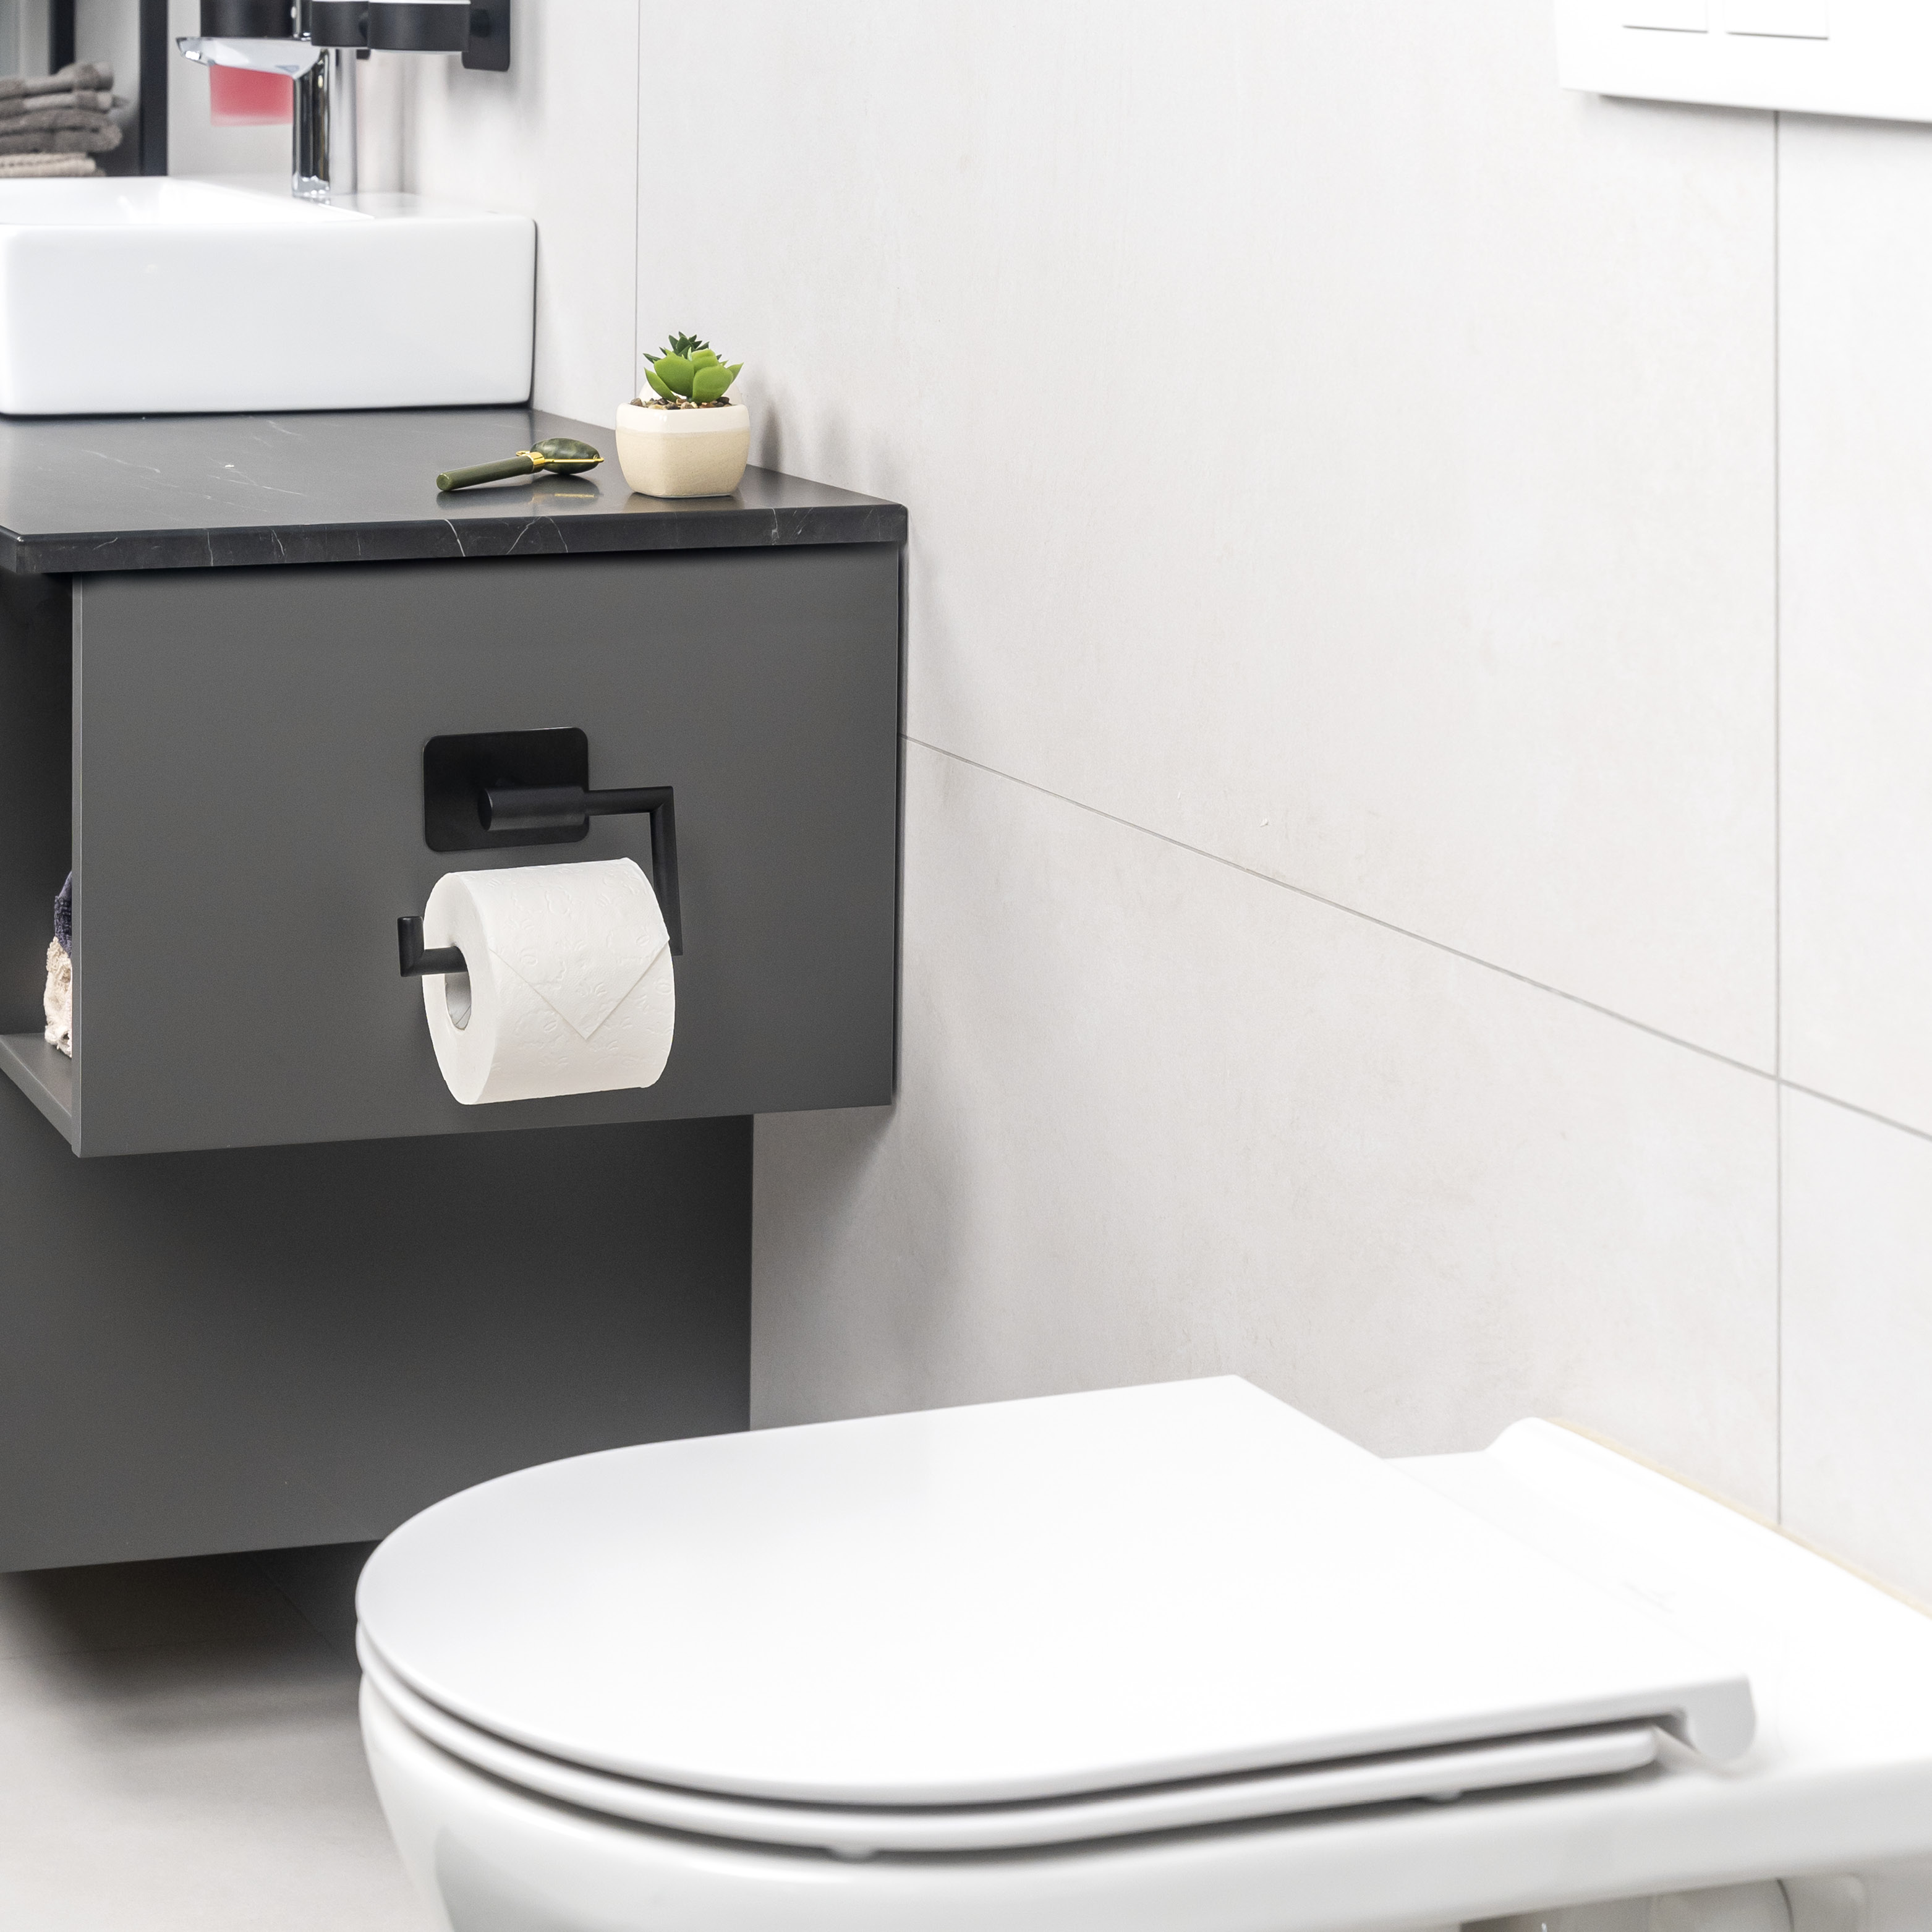 Bad-Serie PIAZZA BLACK TAPE - Toilettenpapierhalter, Papierrollenhalter selbstklebend Edelstahl, schwarz - kein Bohren 3M Klebebefestigung